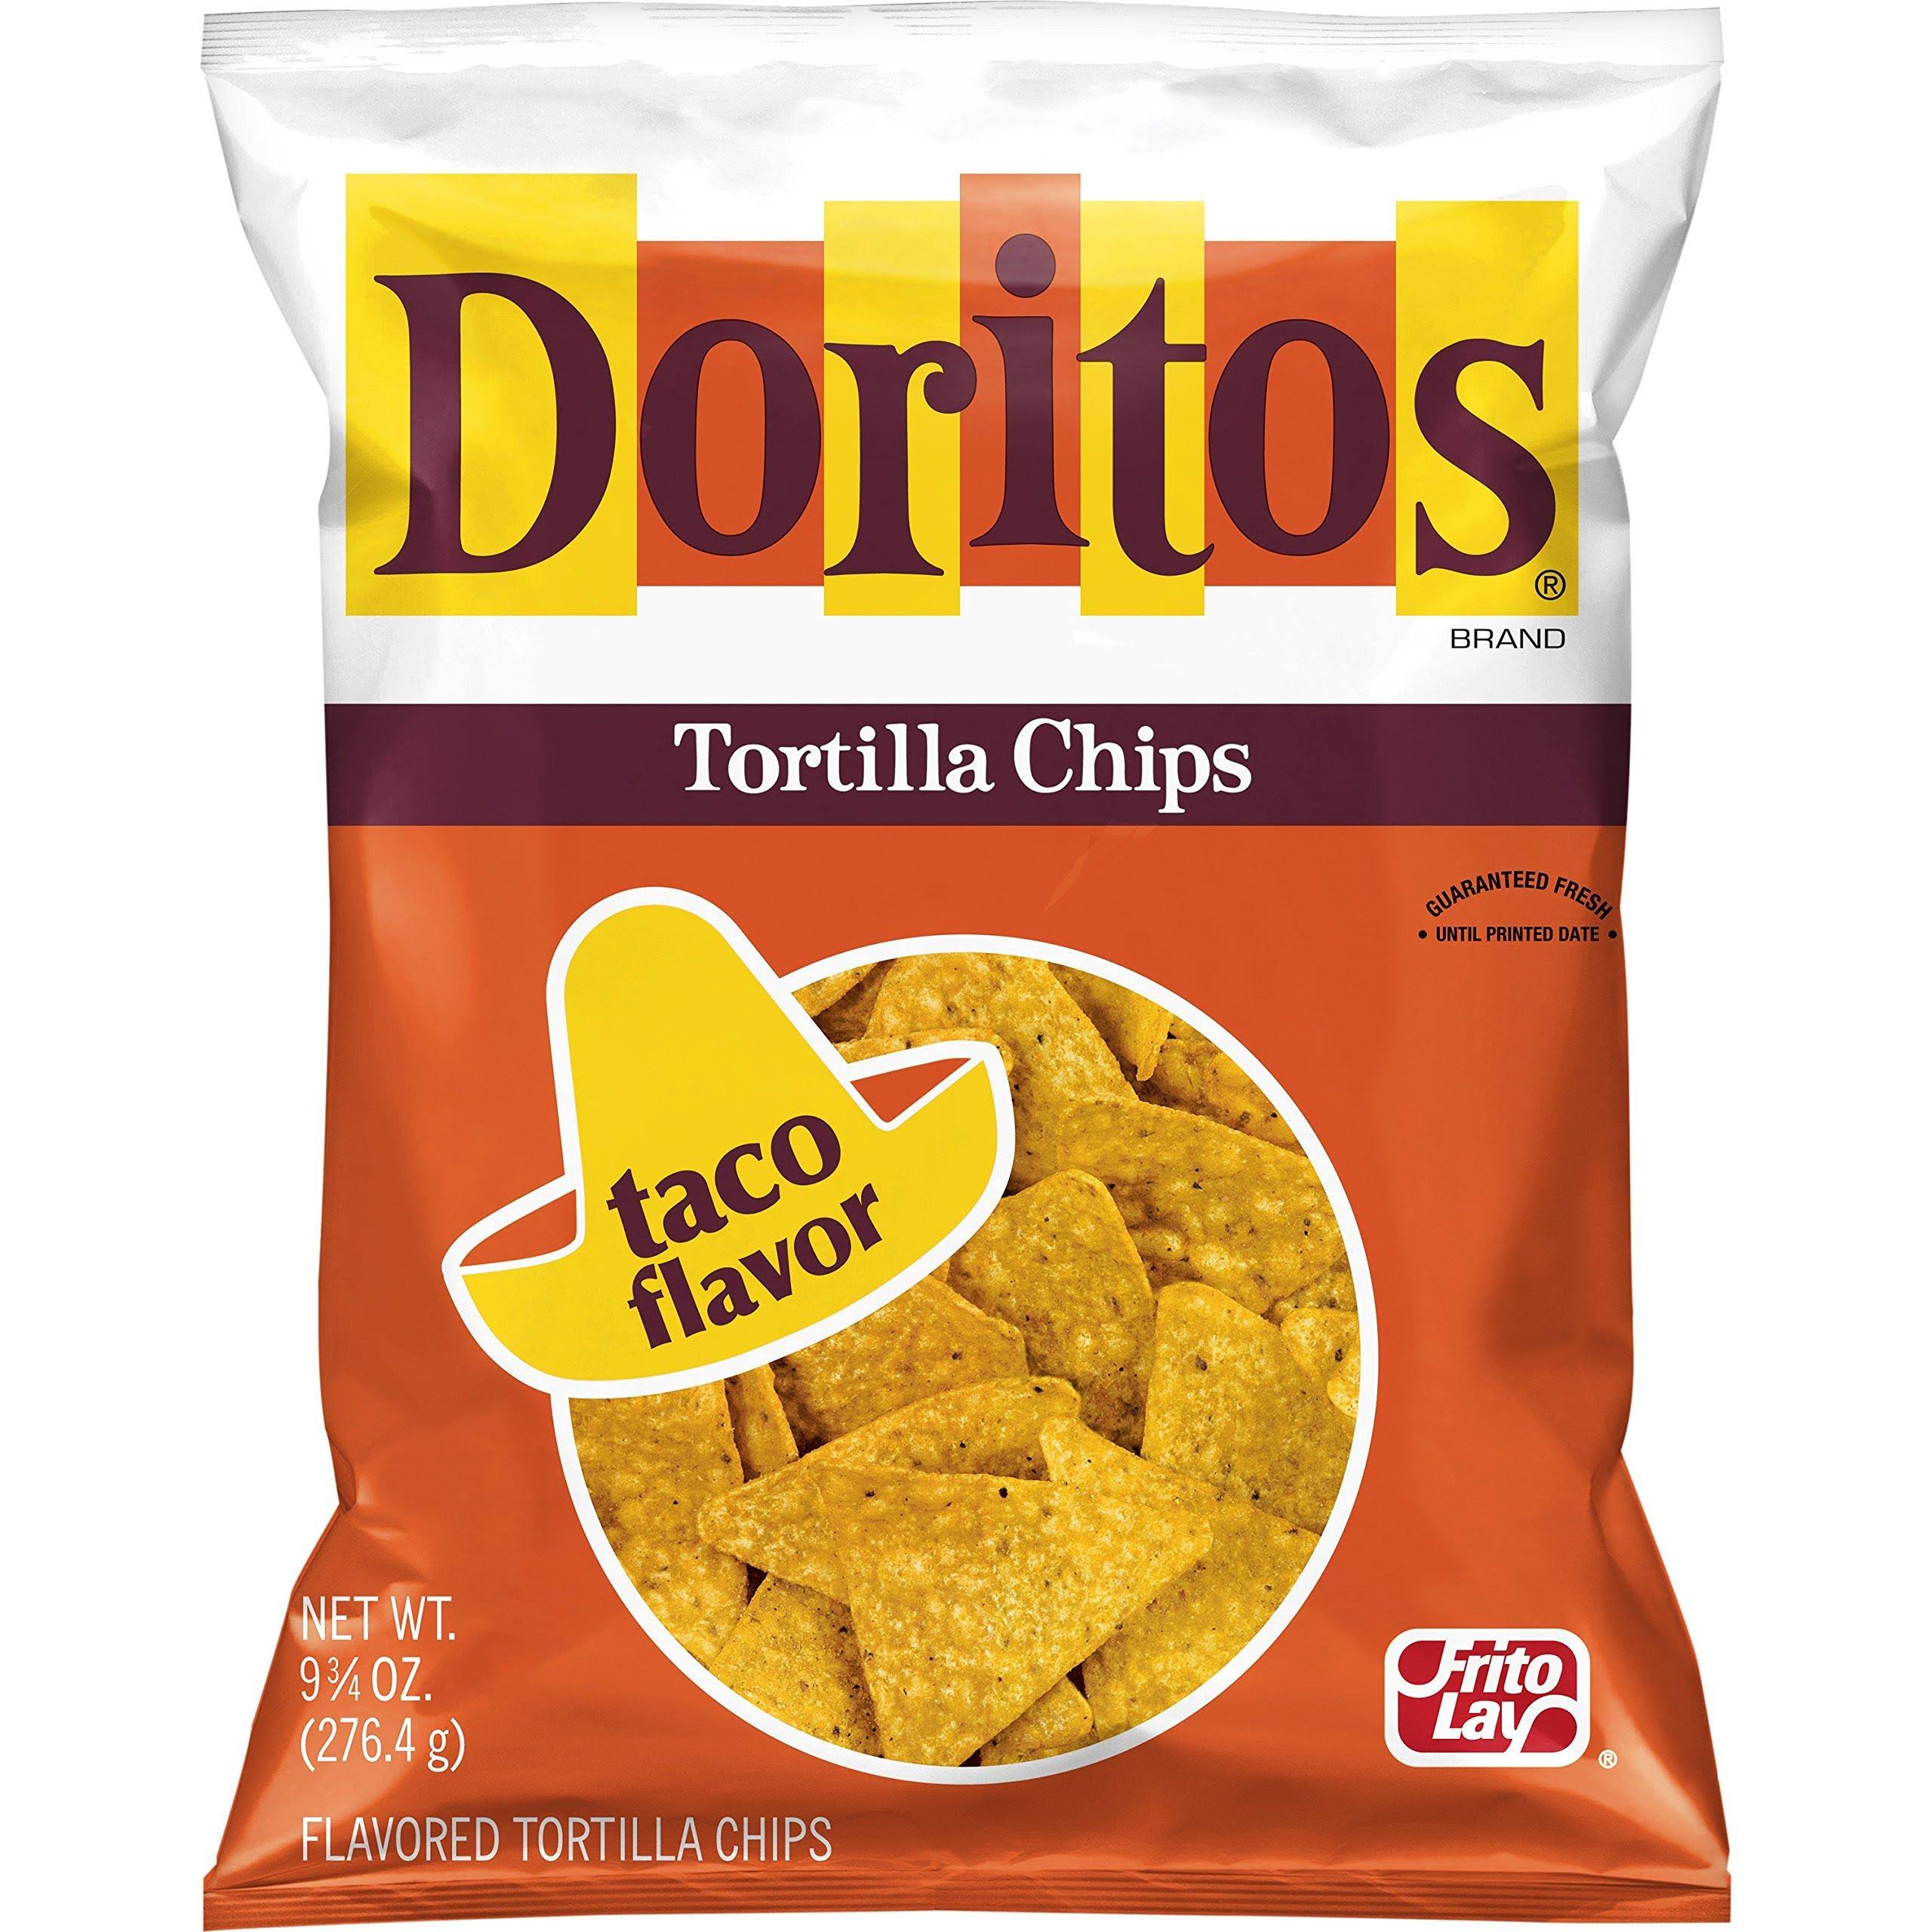 Doritos Tortilla Chips, Taco Flavor - 9.25 oz